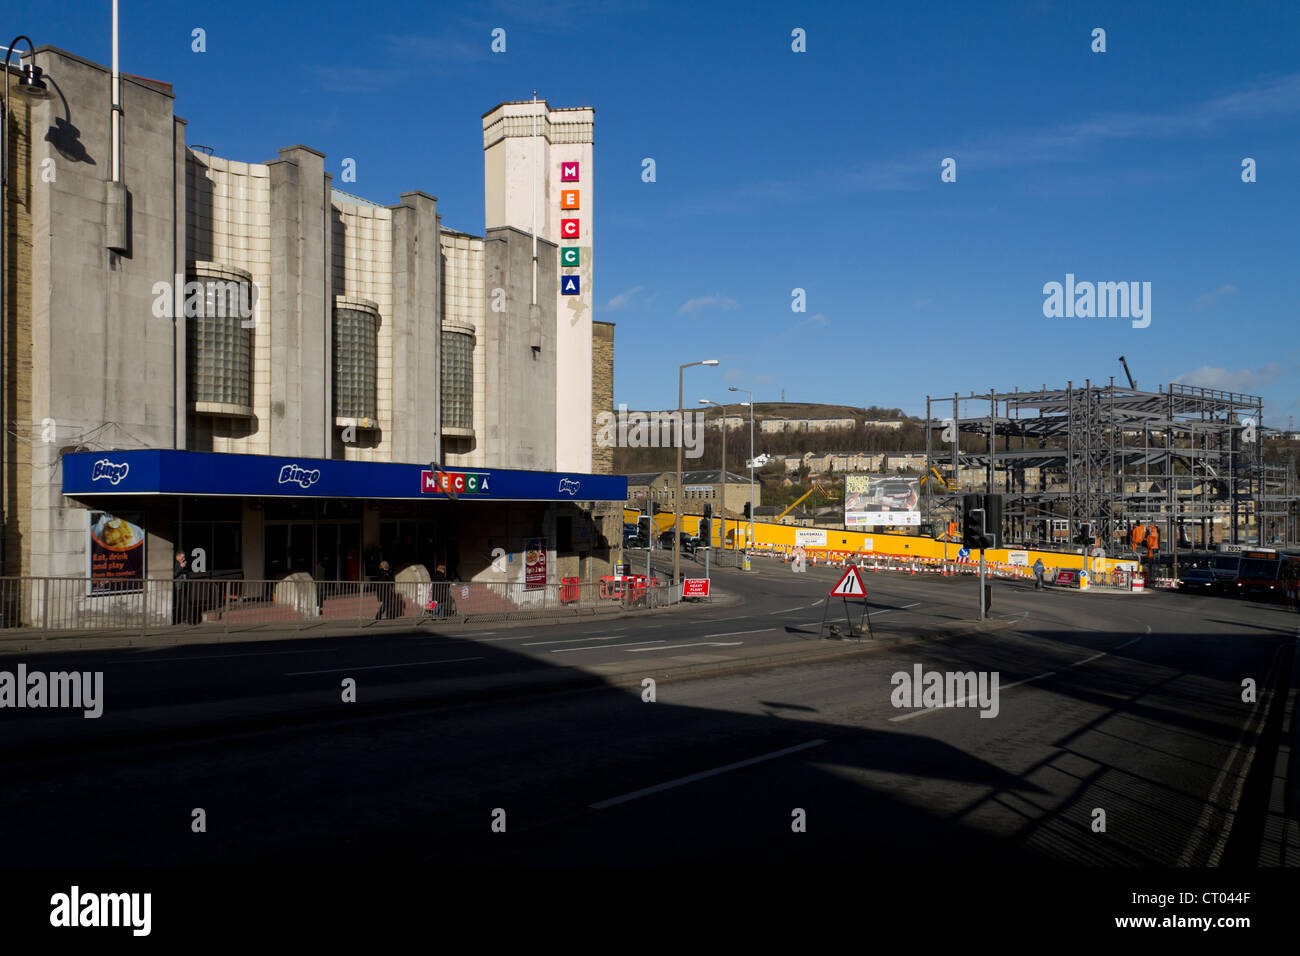 Mecca Bingo-Halle, Broad Street, Halifax, West Yorkshire. Früher das Halifax Odeon. Stockfoto